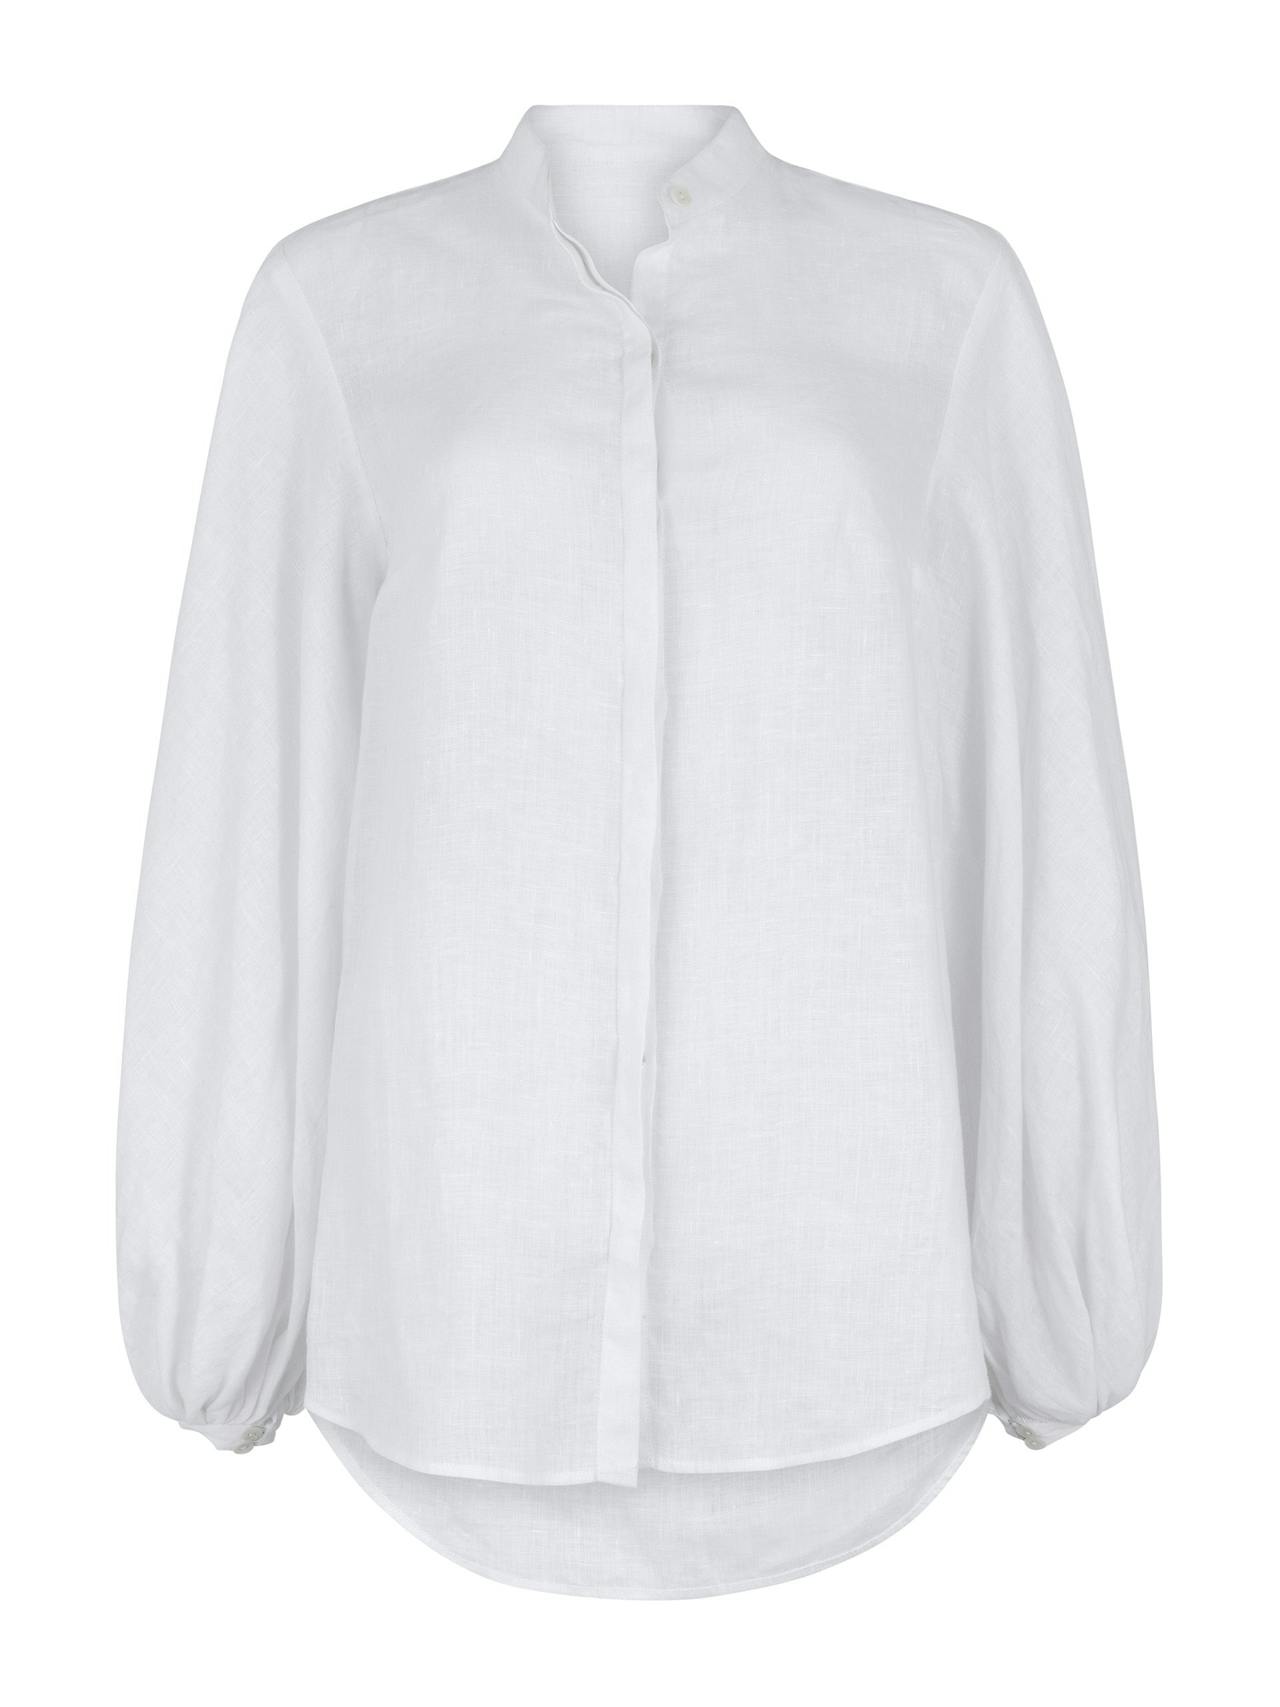 Maia white linen blouse